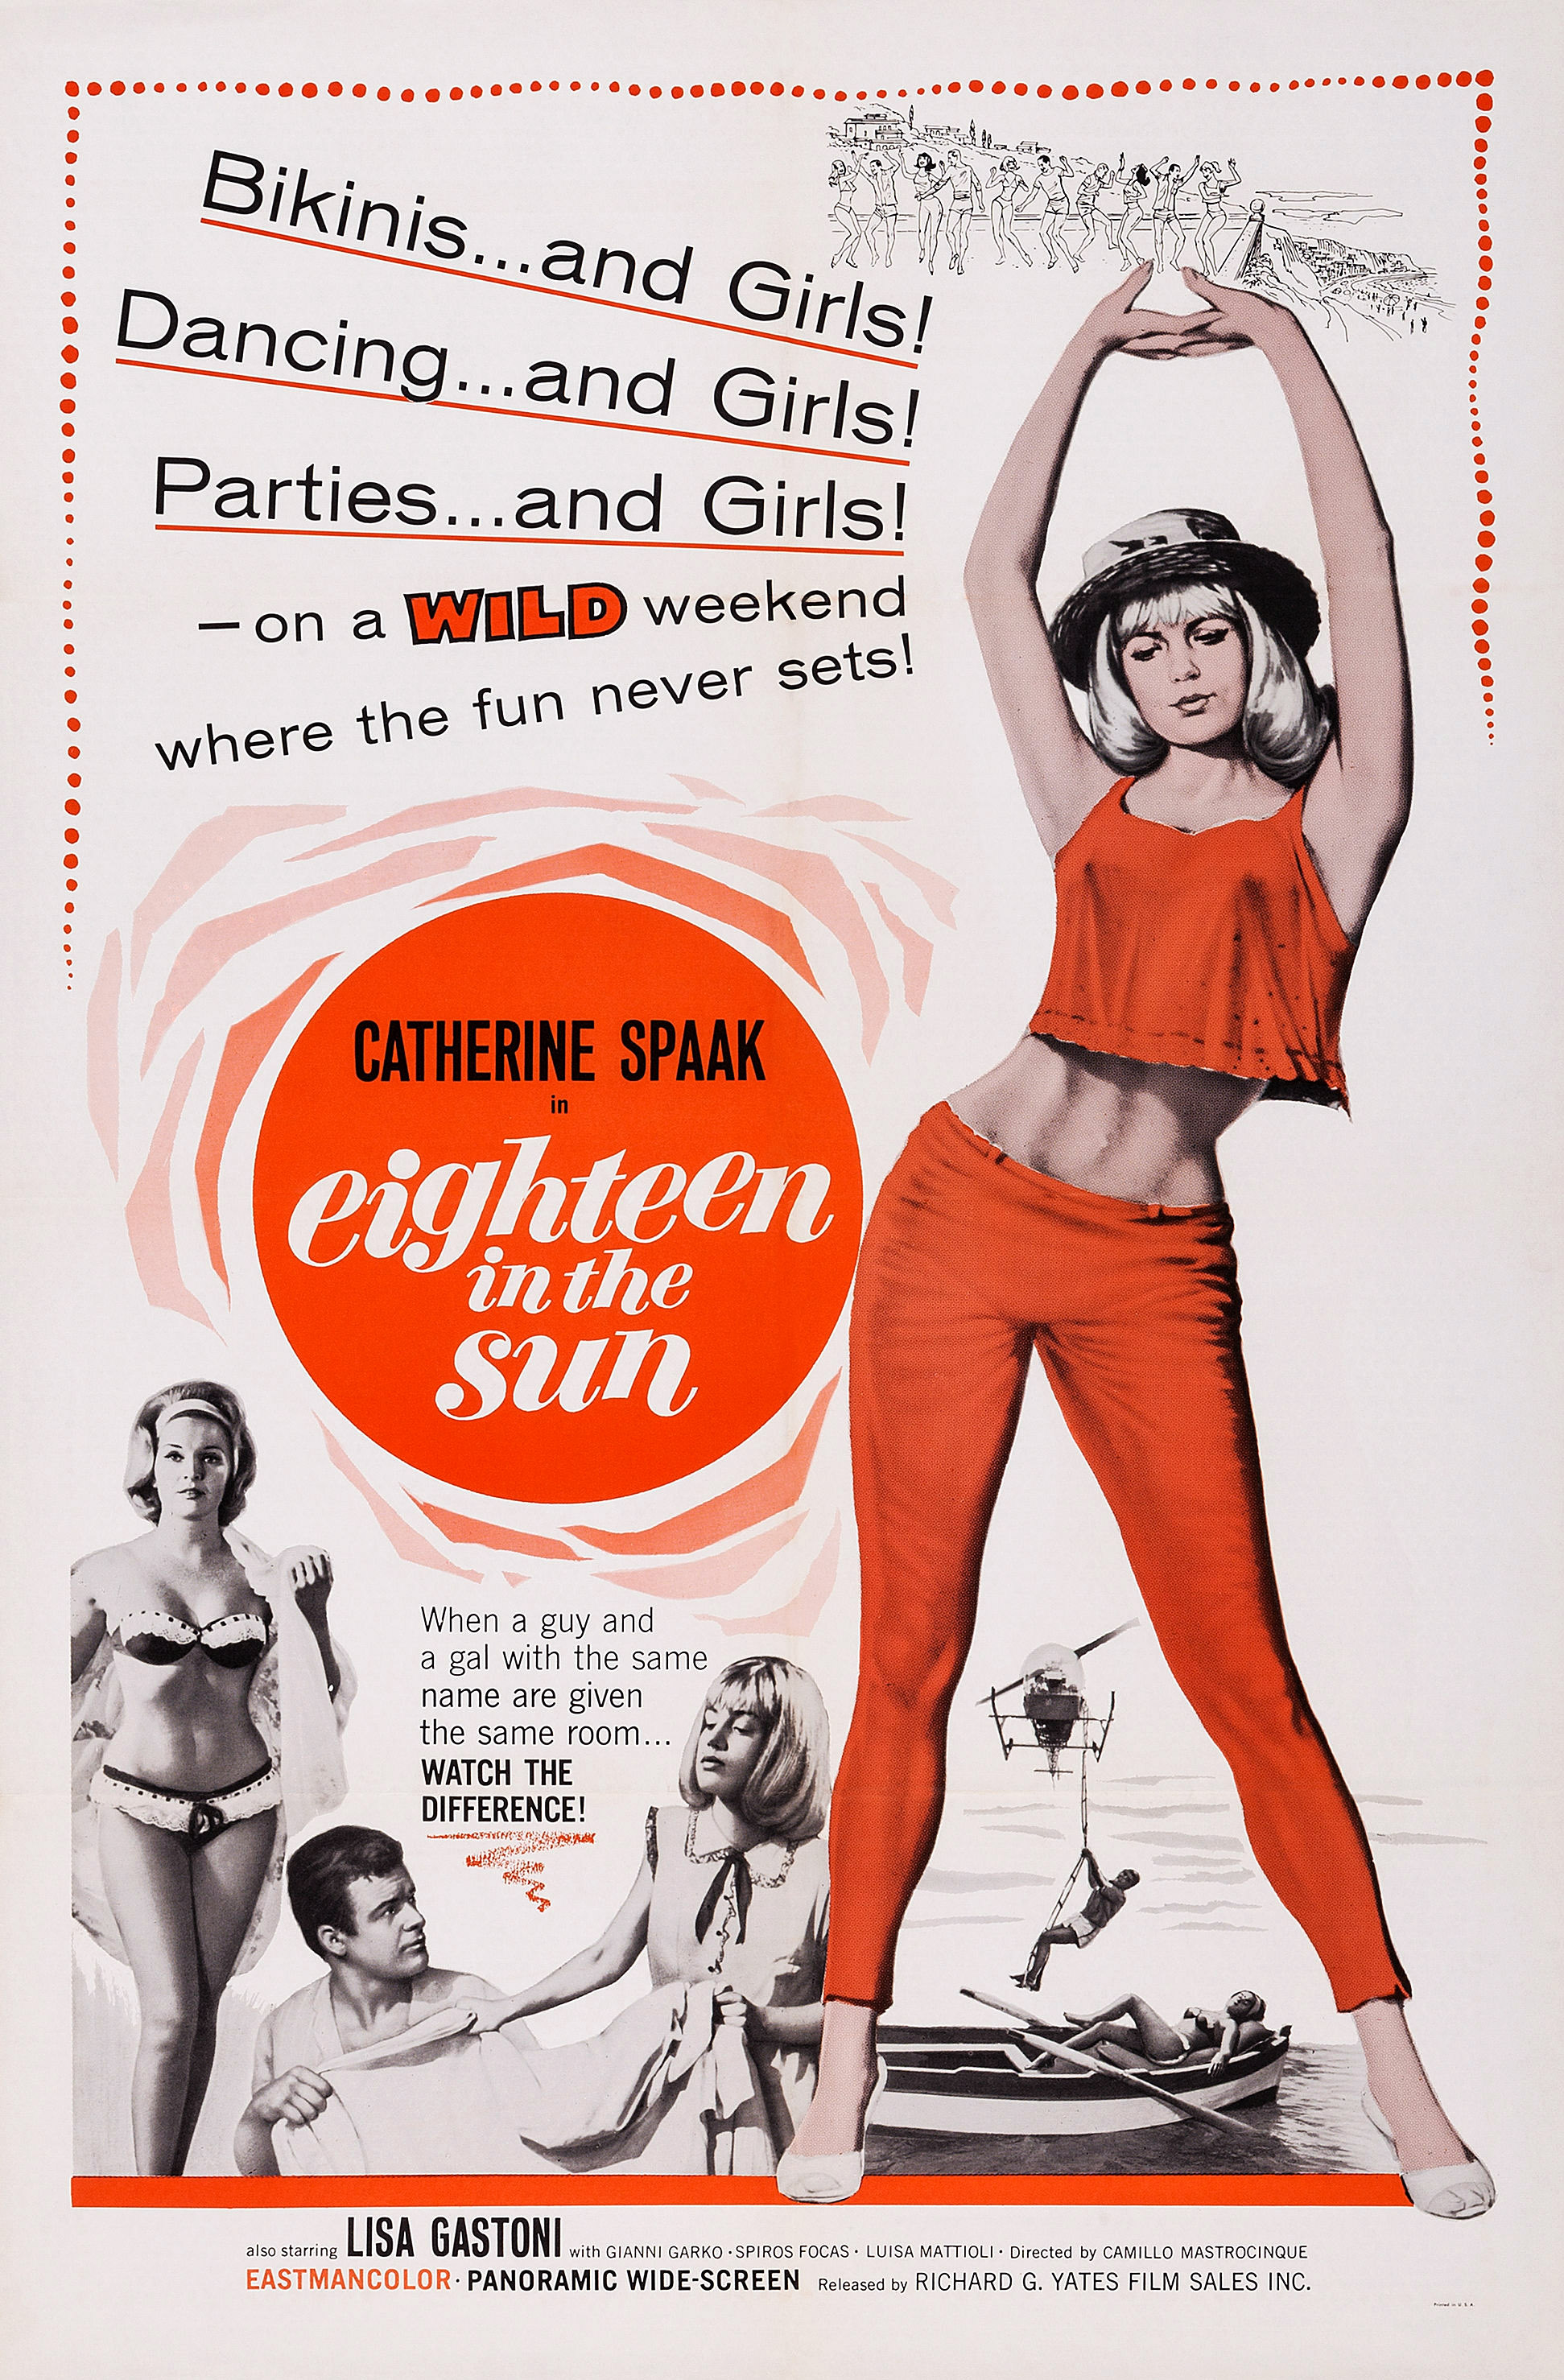 Locandina del film "Diciottenni al sole", 1962